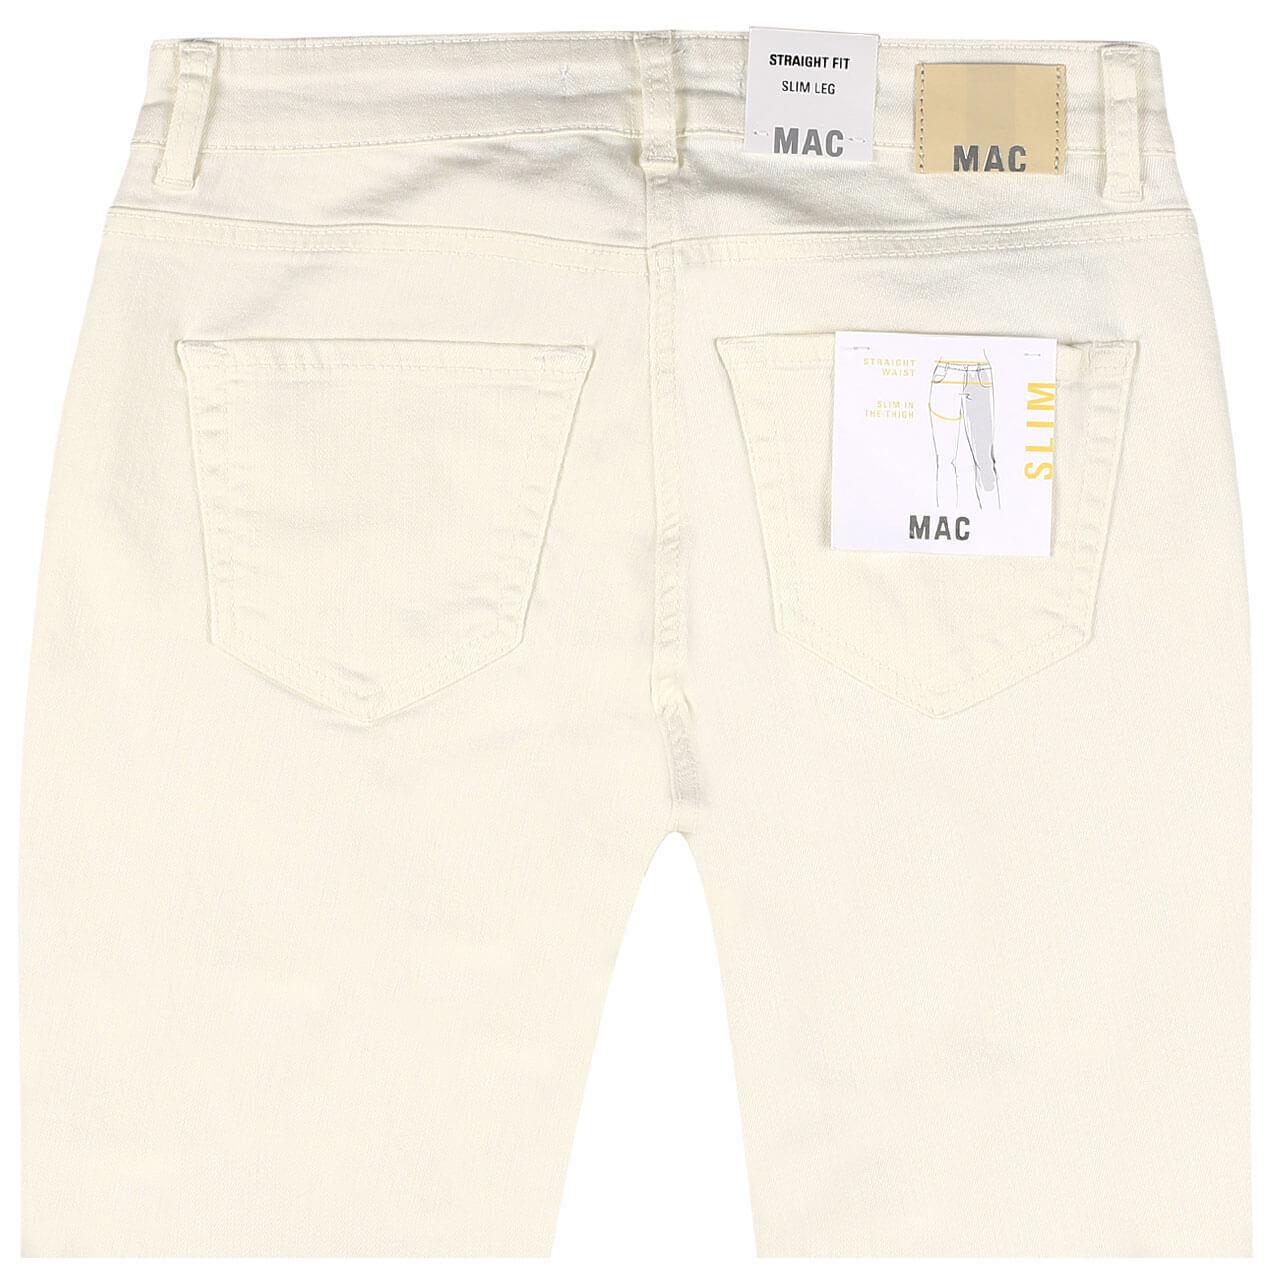 MAC Jeans Slim für Damen in Cremeweiß, FarbNr.: 013R